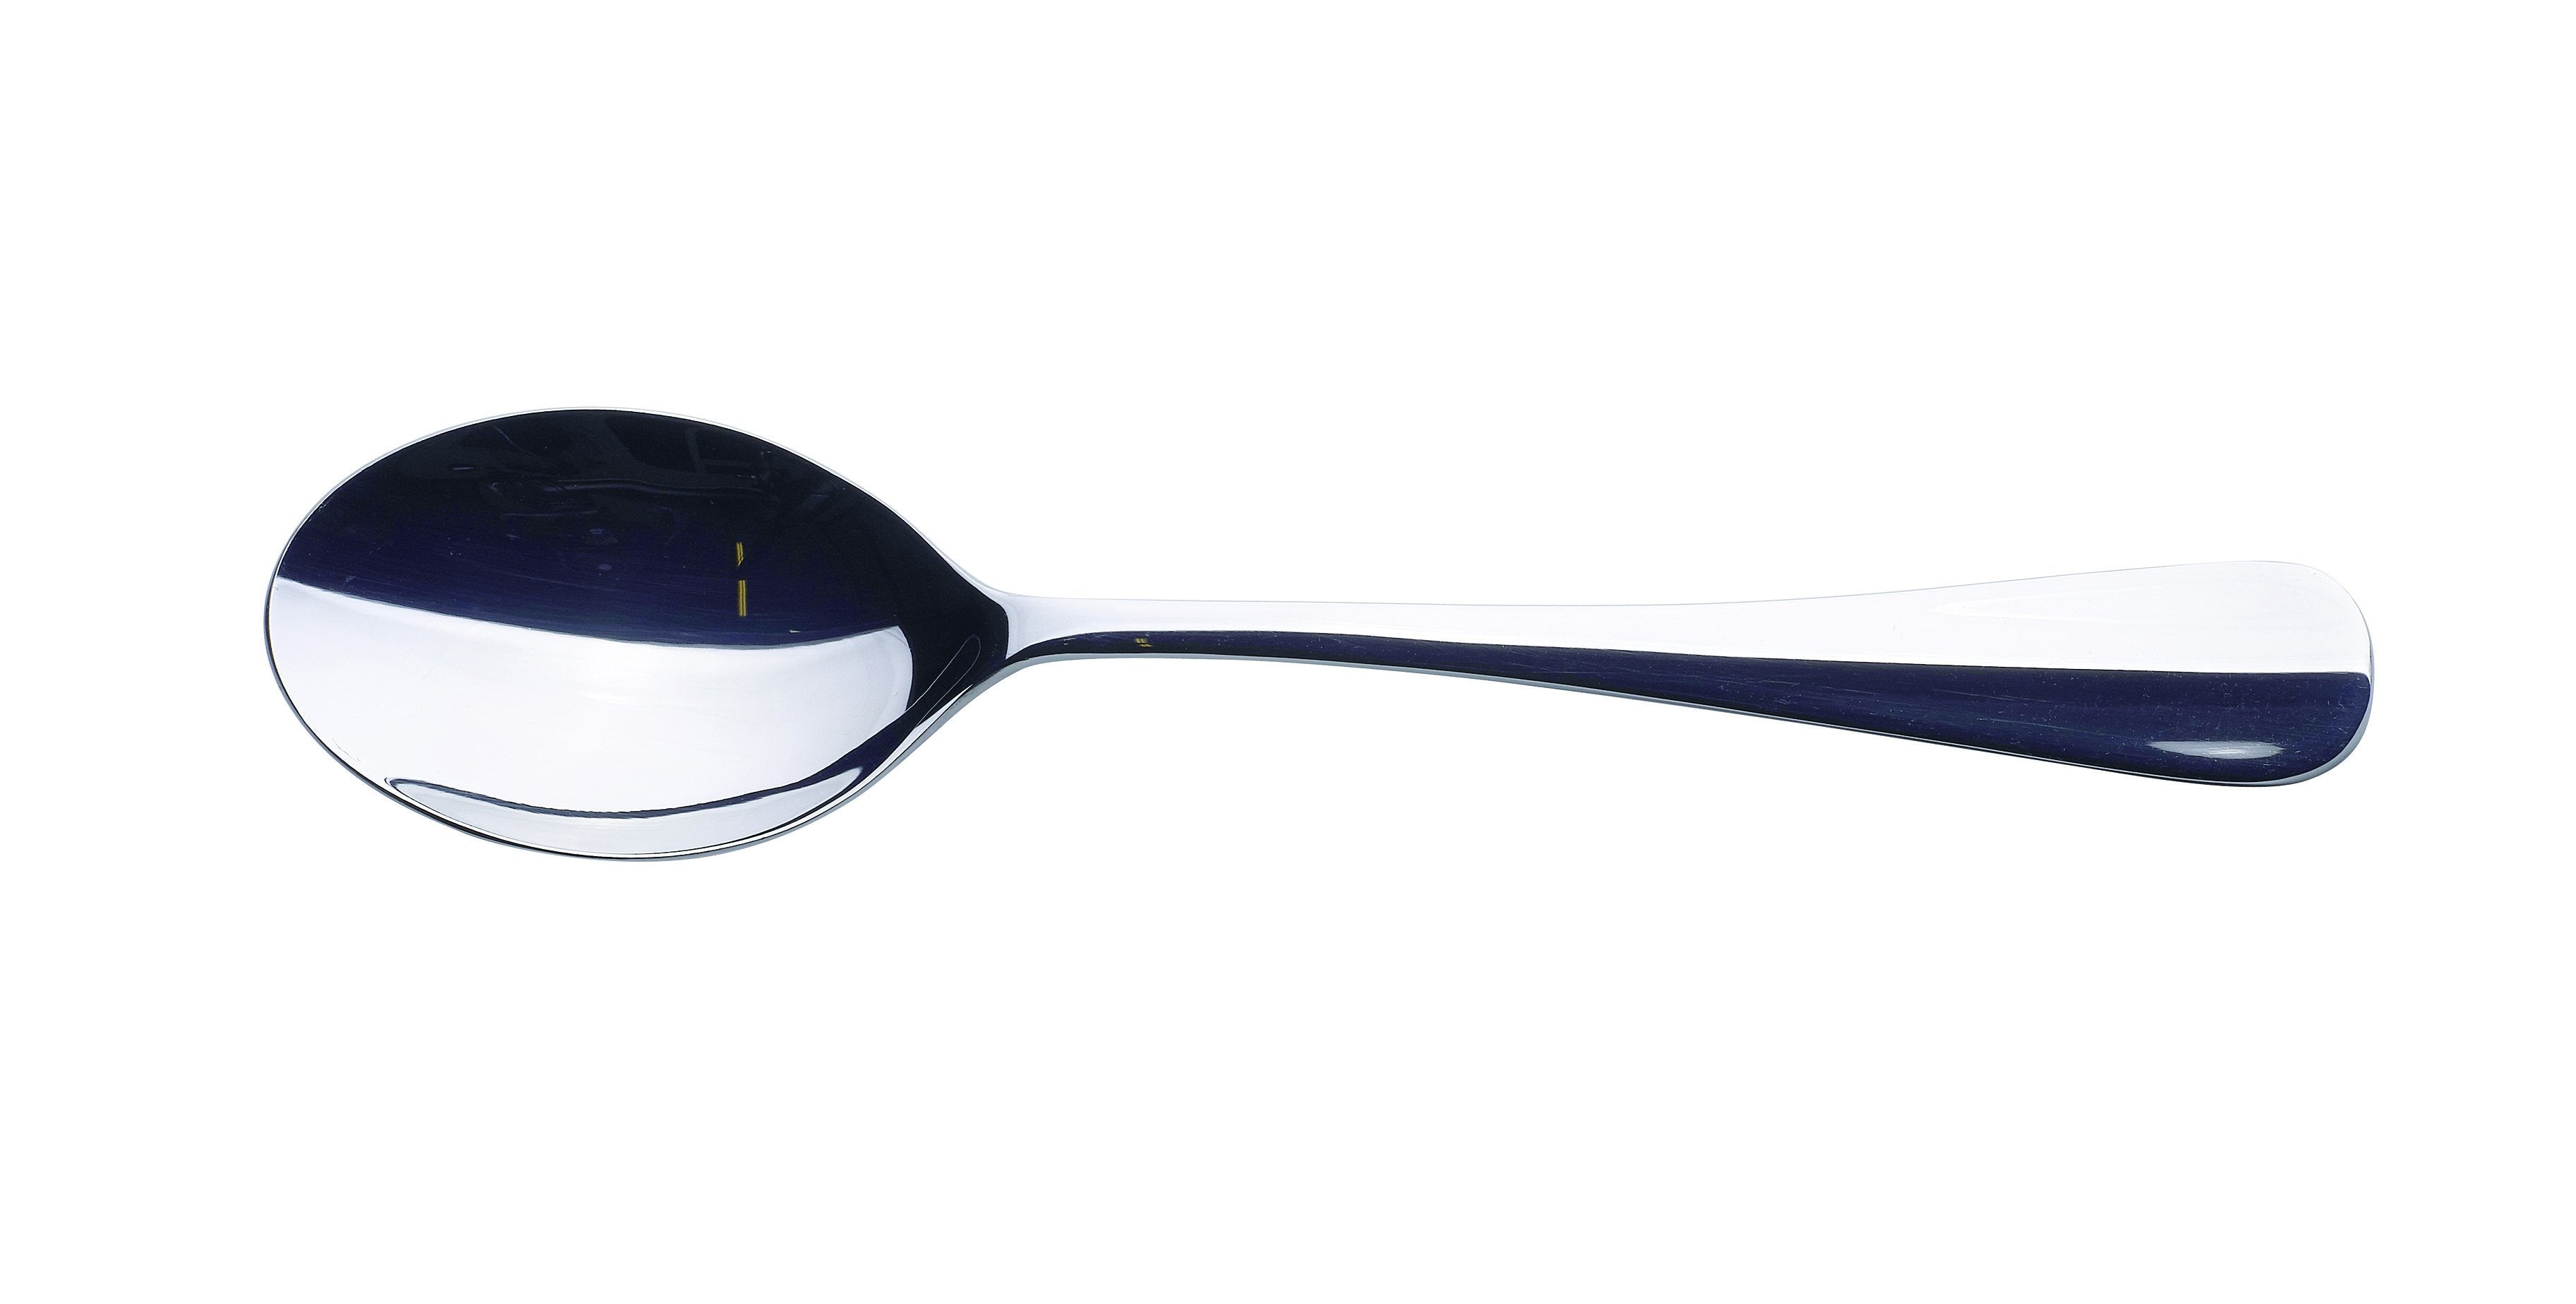 Genware Baguette Dessert Spoon 18/0 (Dozen)